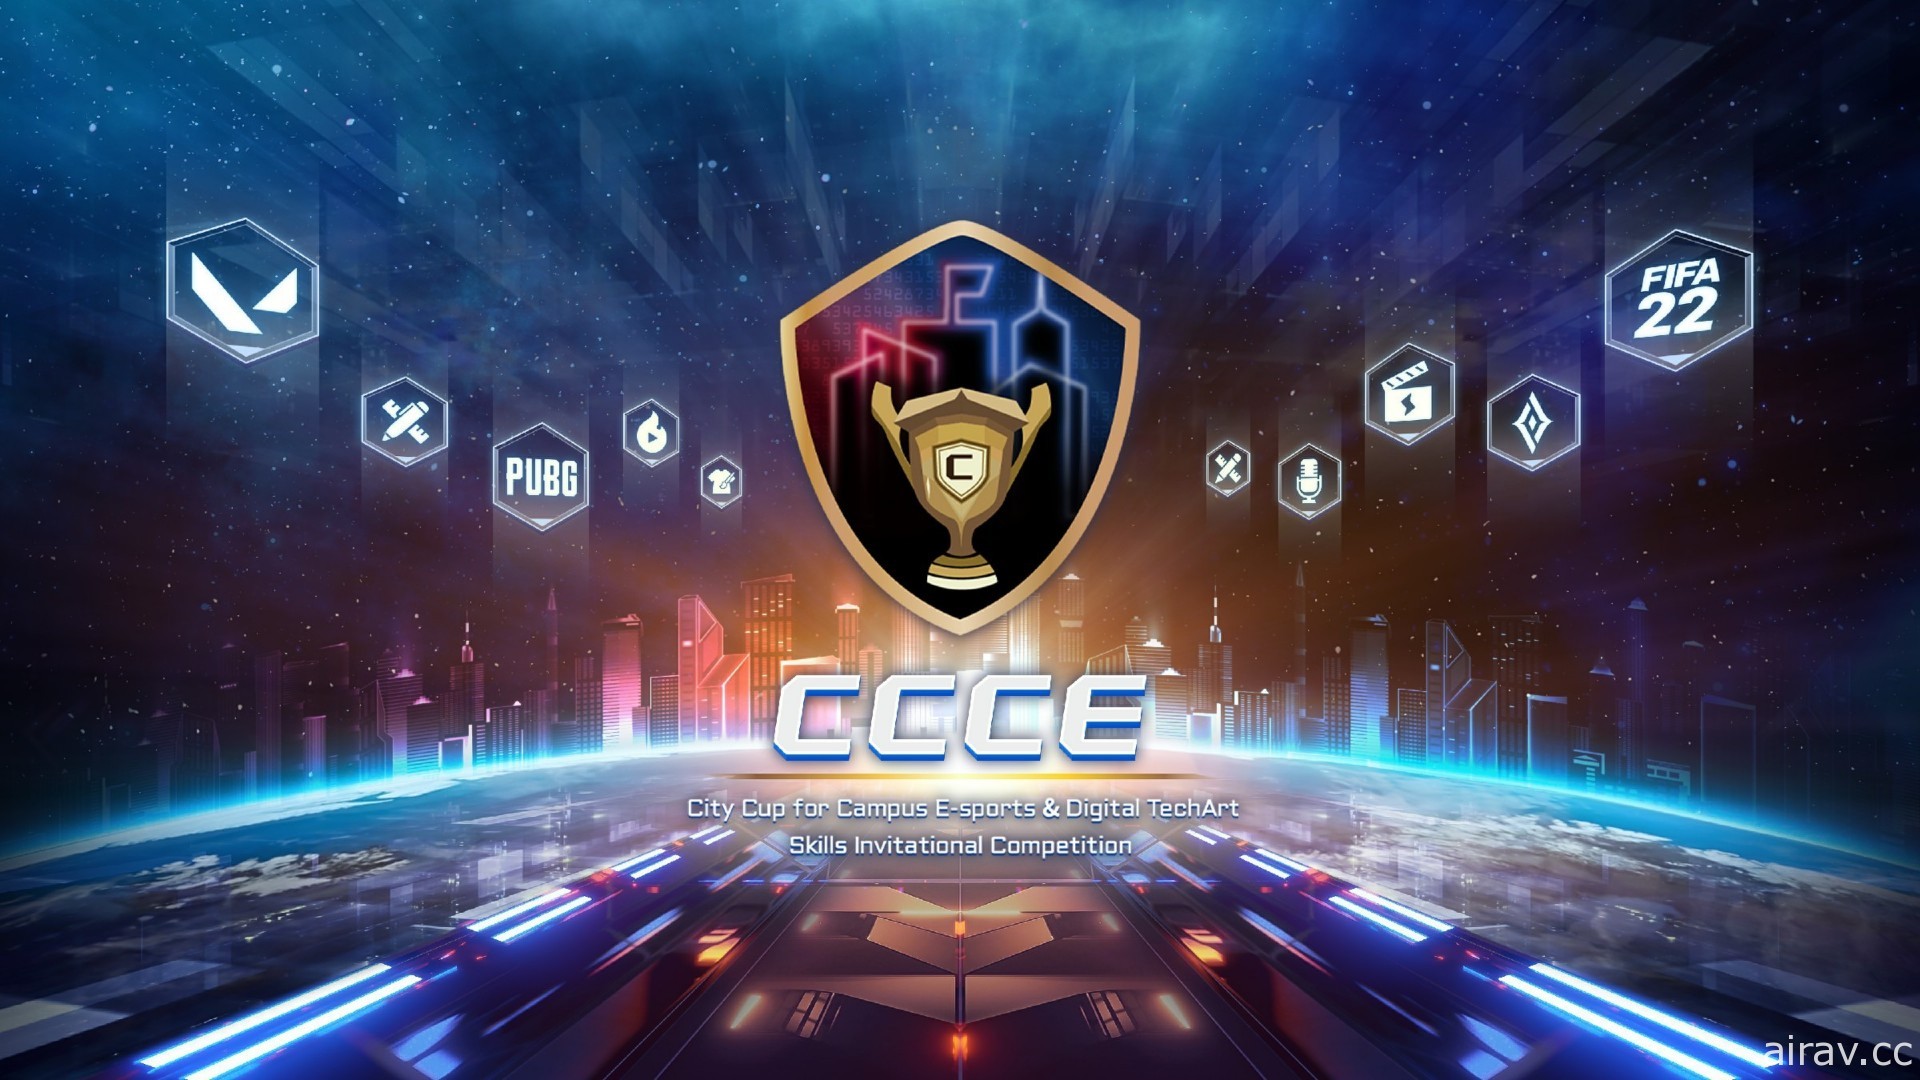 第四屆「CCCE 城市盃」電競邀請賽開放報名 包含《PUBG》《特戰英豪》《傳說對決》等